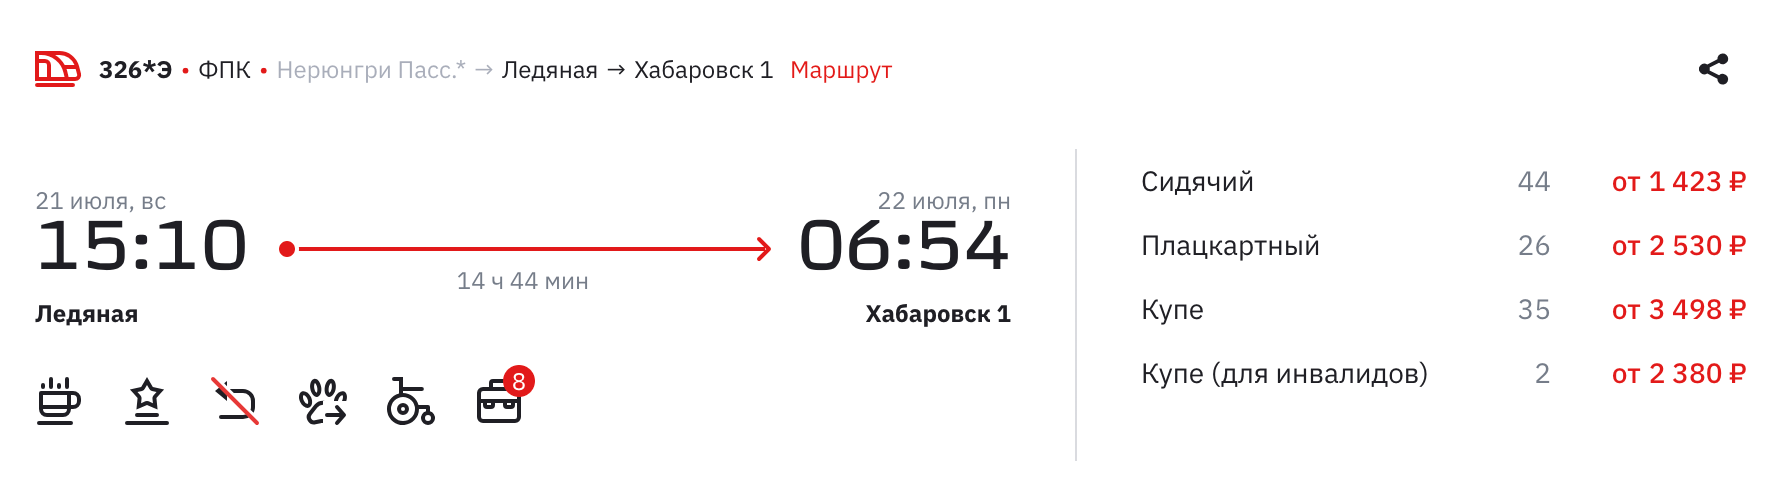 Поезд № 326Э, на котором возвращаются из тура, отправляется со станции Ледяная в 15:10 и прибывает в Хабаровск в 06:54 утра на следующий день. Источник: ticket.rzd.ru